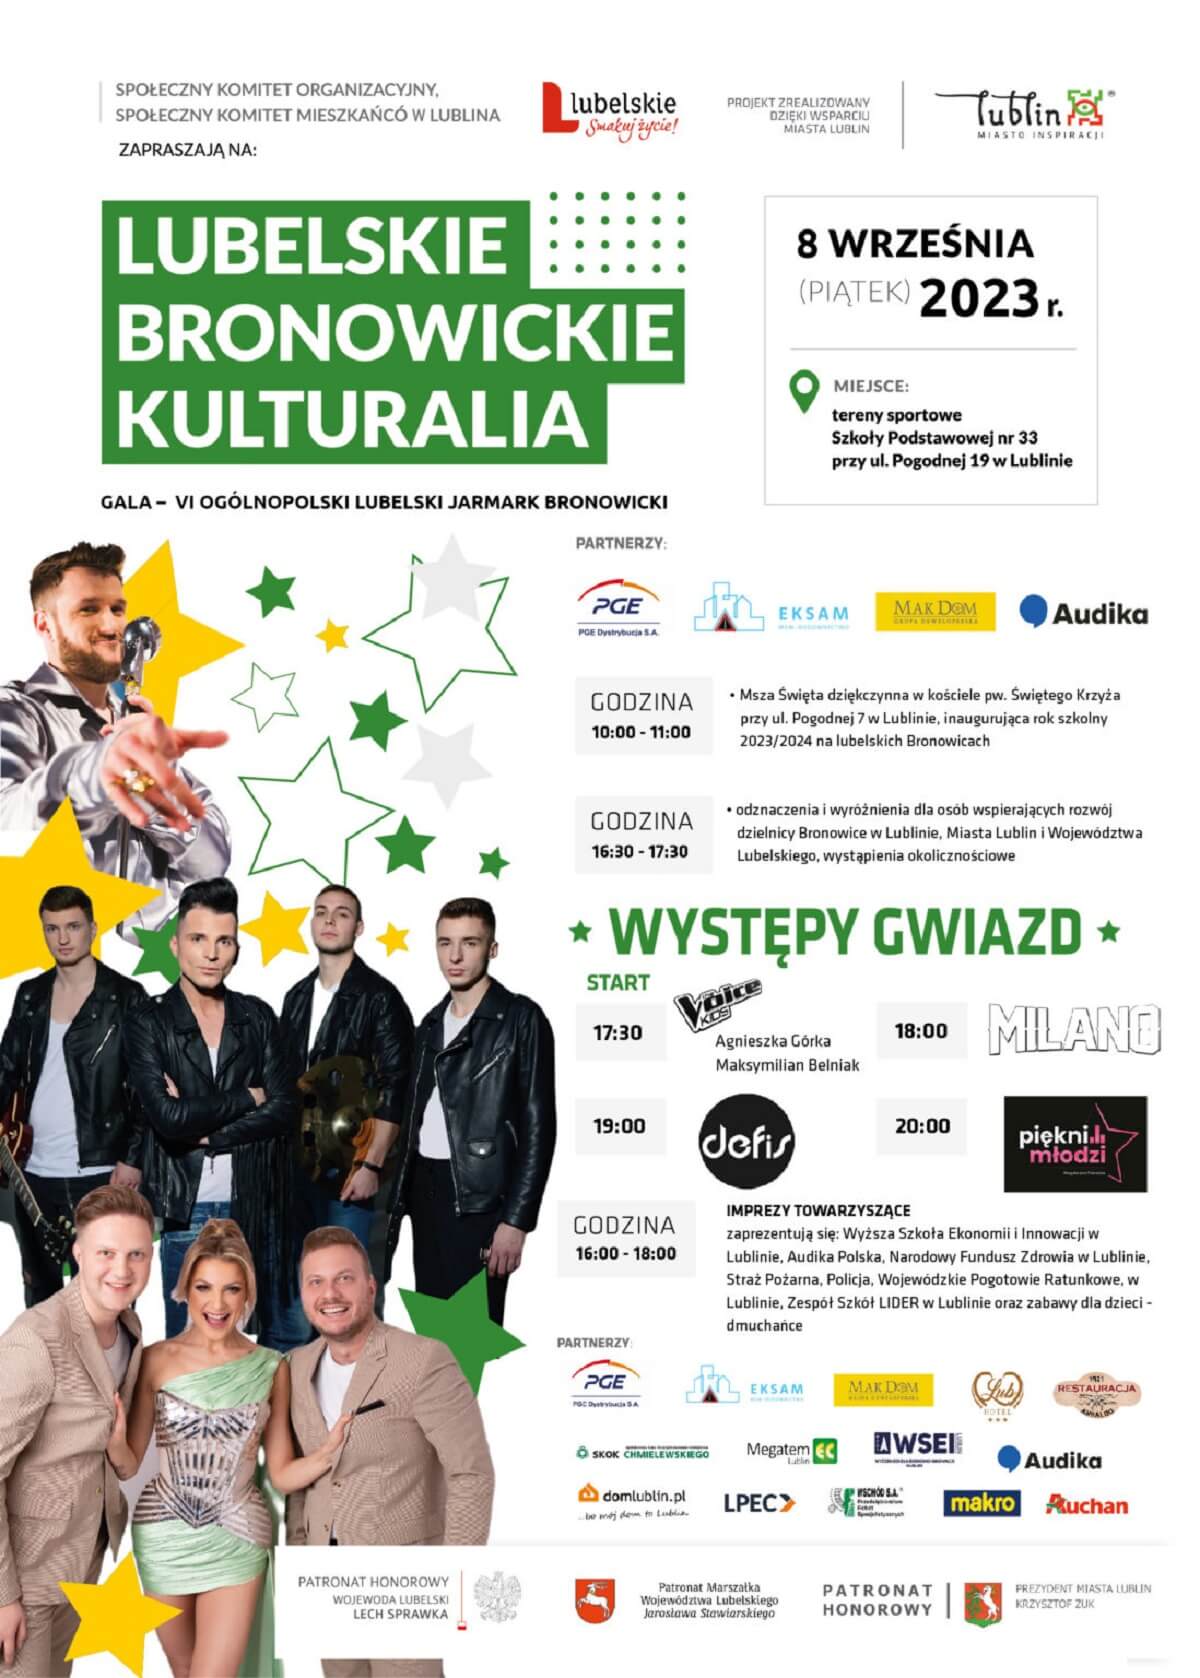 Lubelskie Bronowickie Kulturalia 2023 - plakat, program wydarzenia